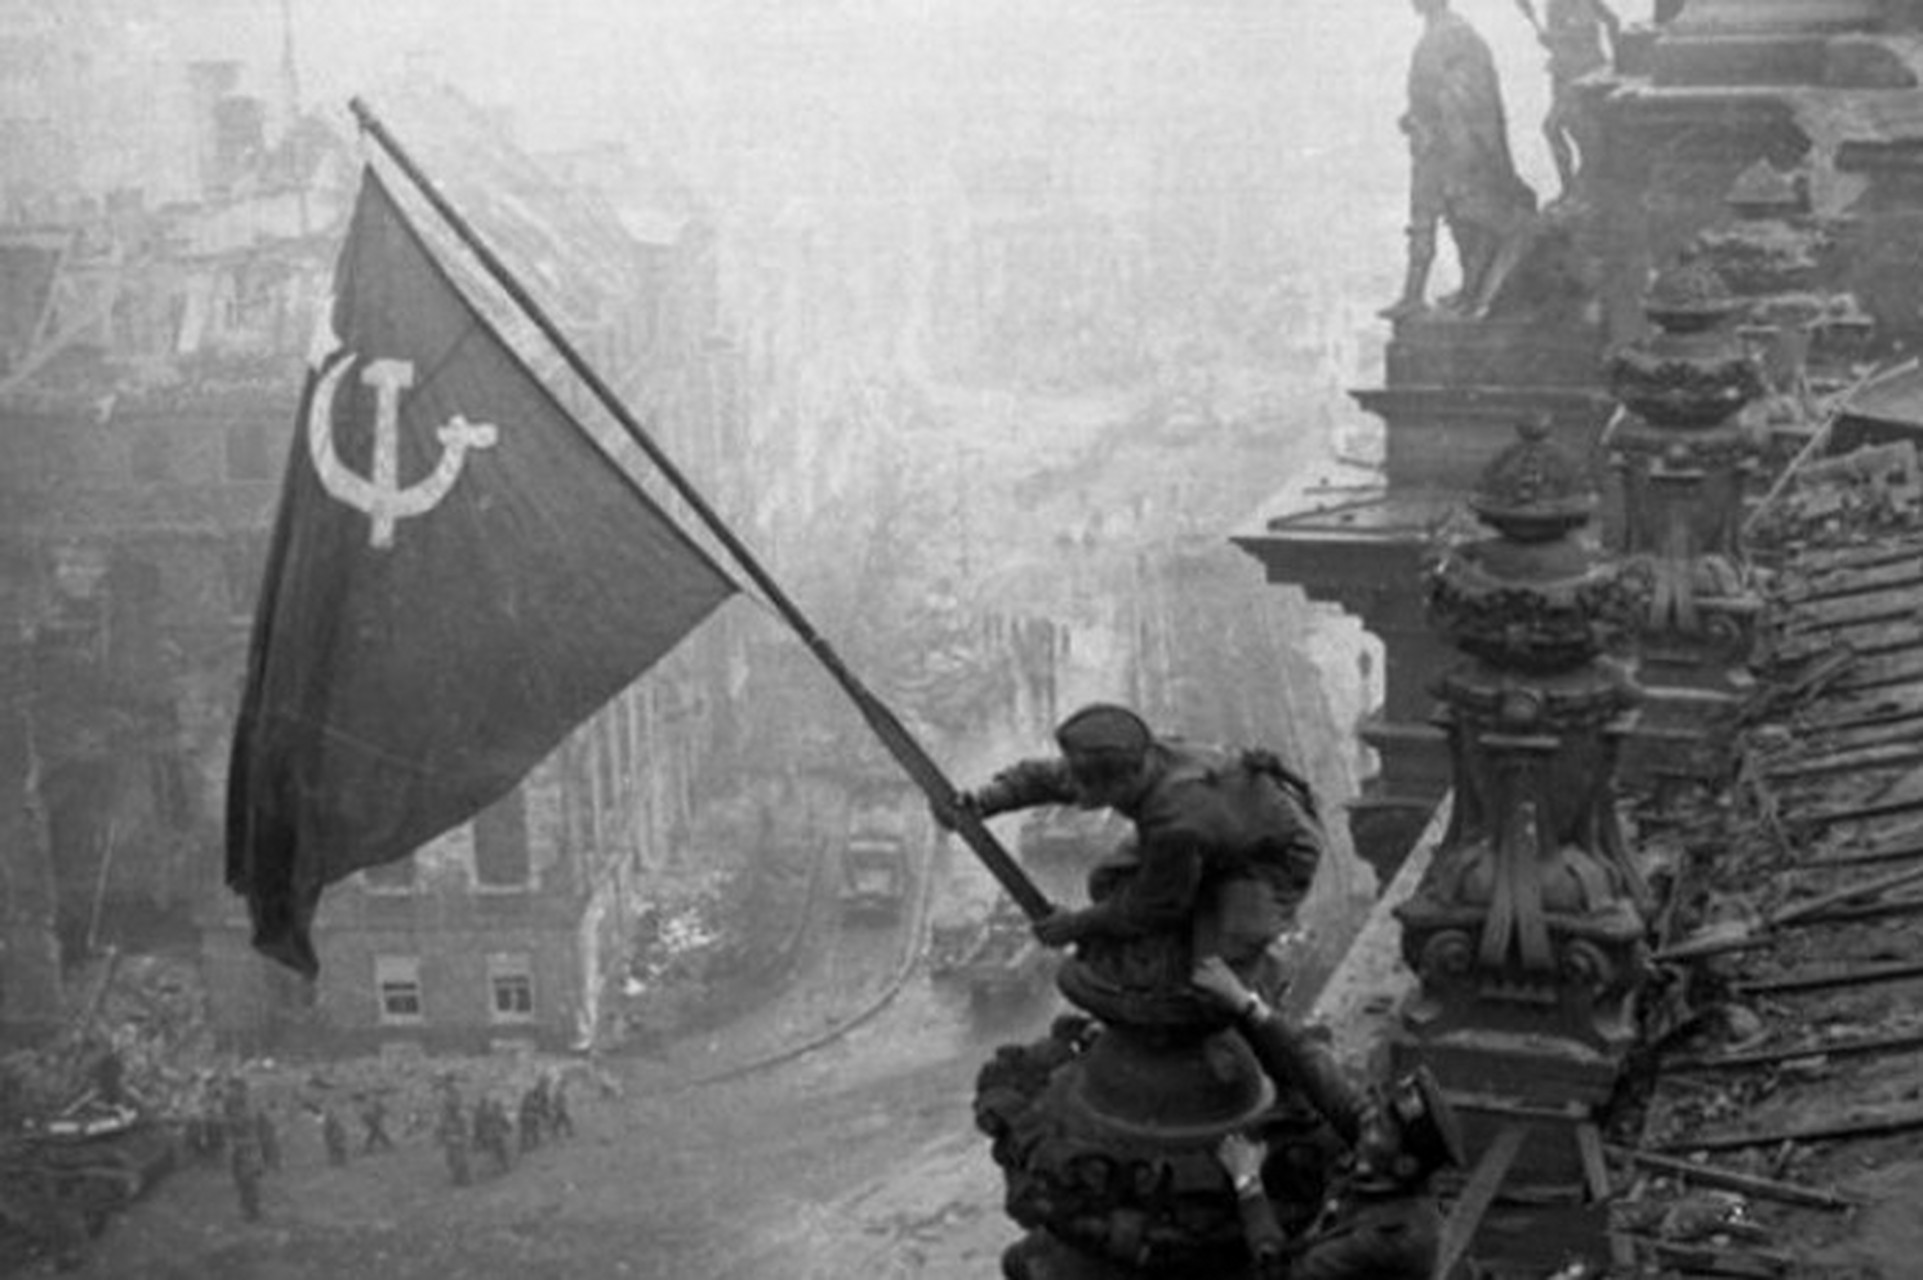 苏联红军攻占帝国大厦,向勇敢的苏联红军致敬,希望和平长久的下去